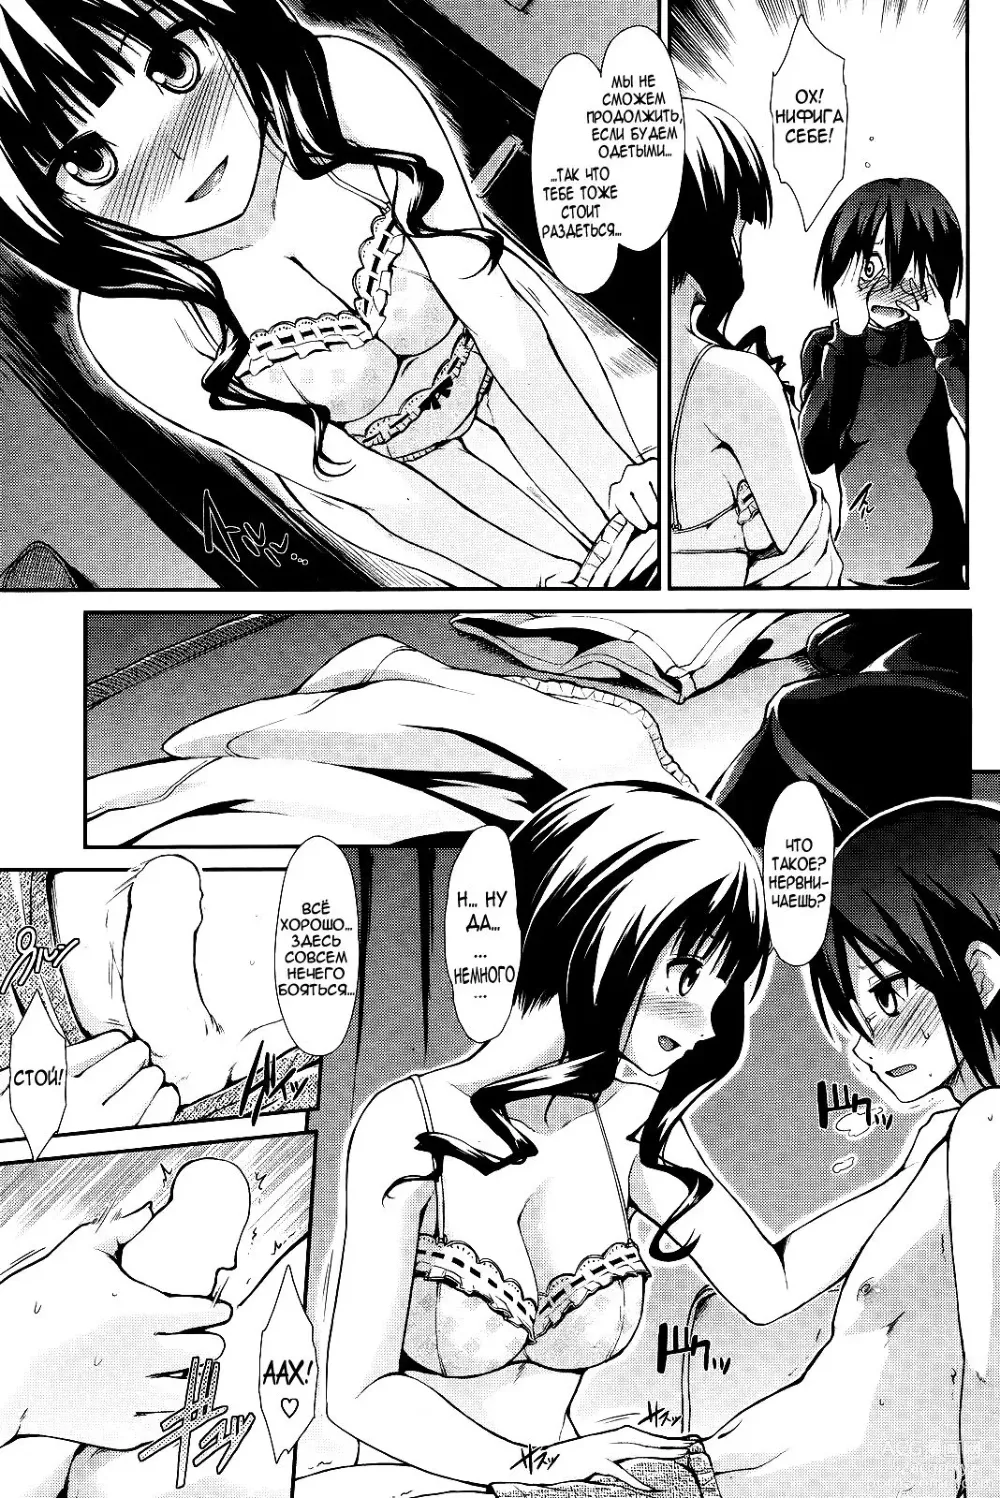 Page 9 of manga Две части одного целого